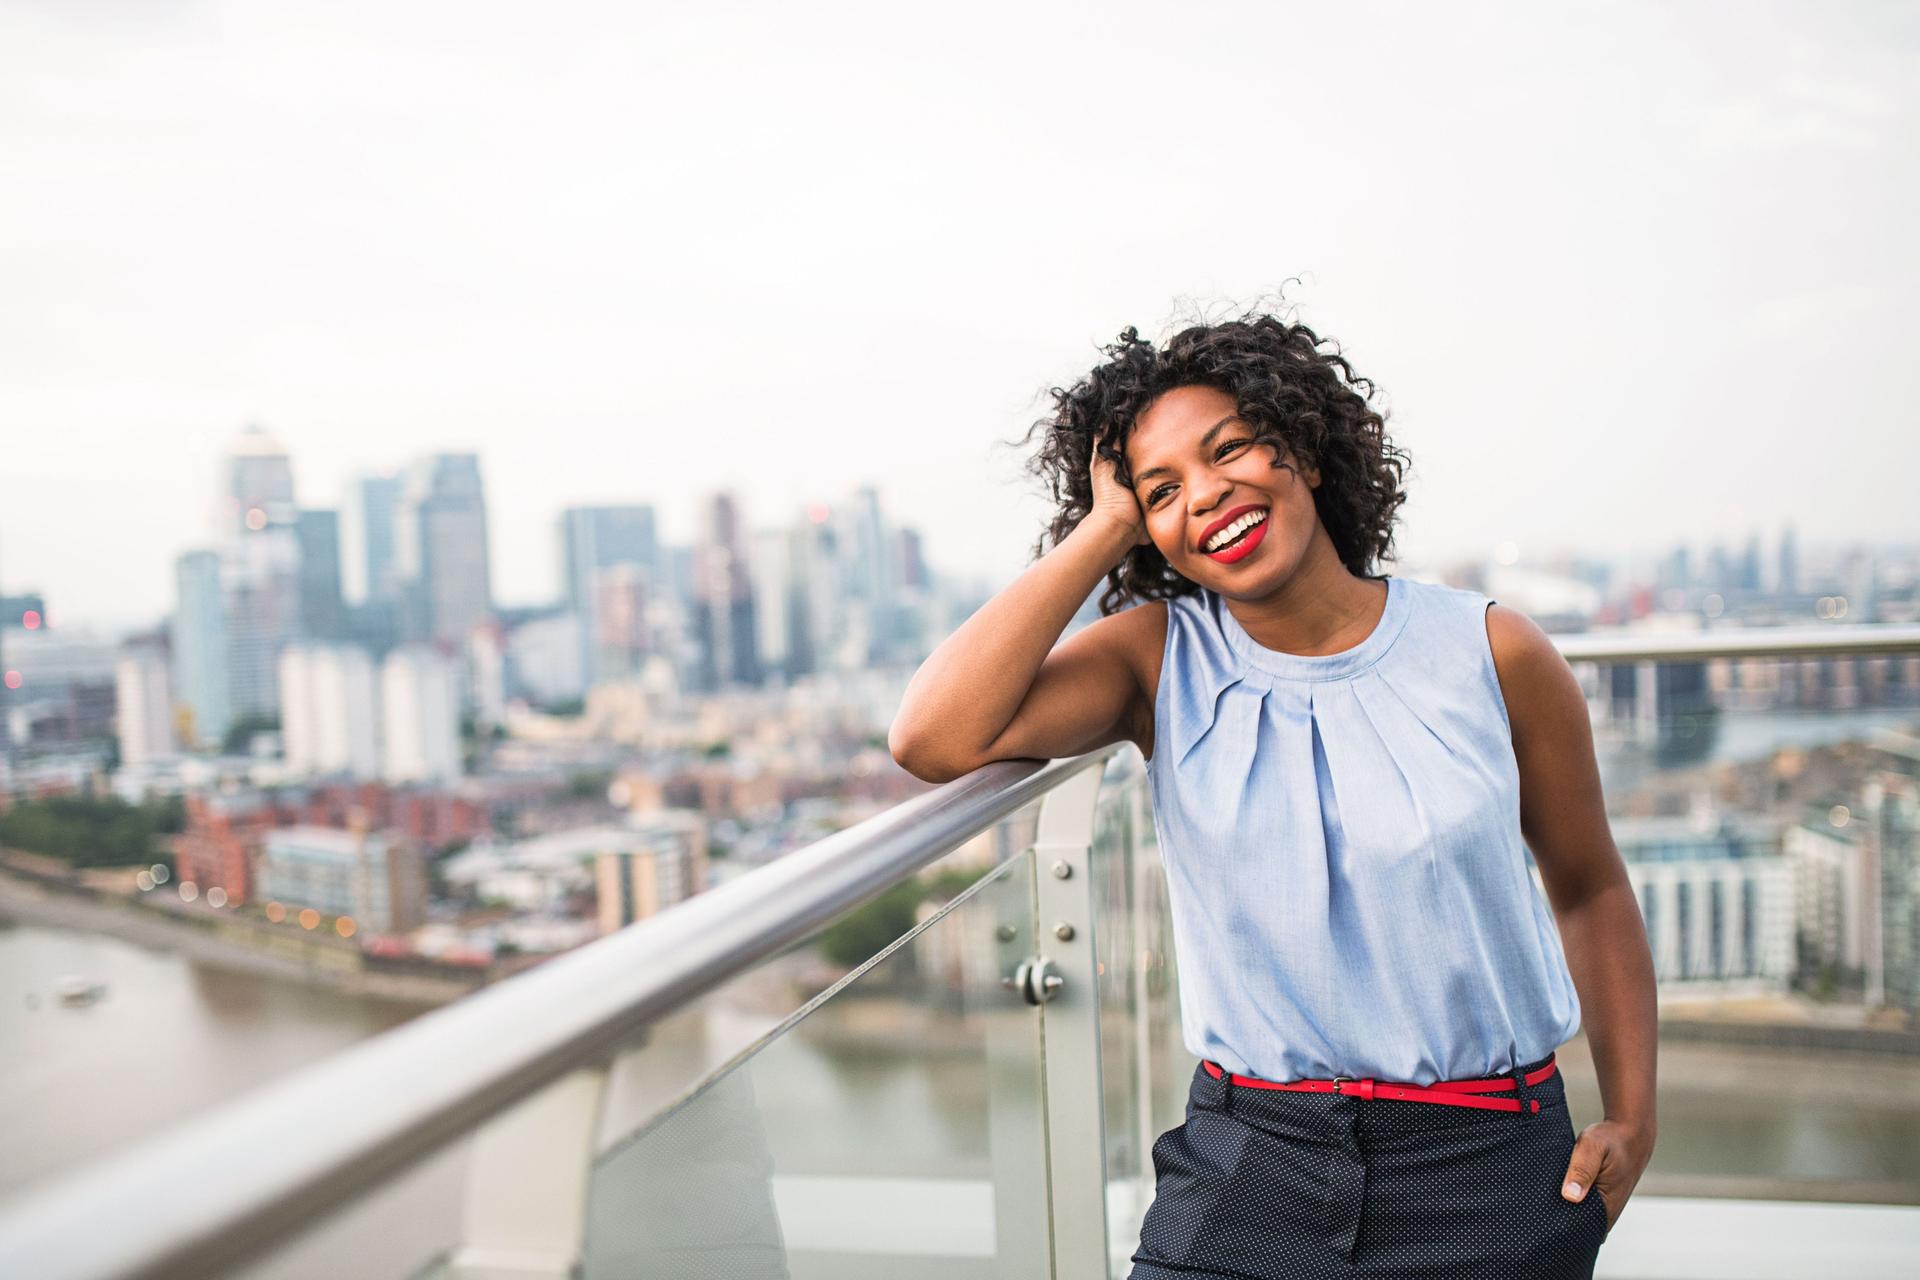 Junge Frau lehnt lachend auf Brückengeländer mit Großstadtkulisse im Hintergrund.